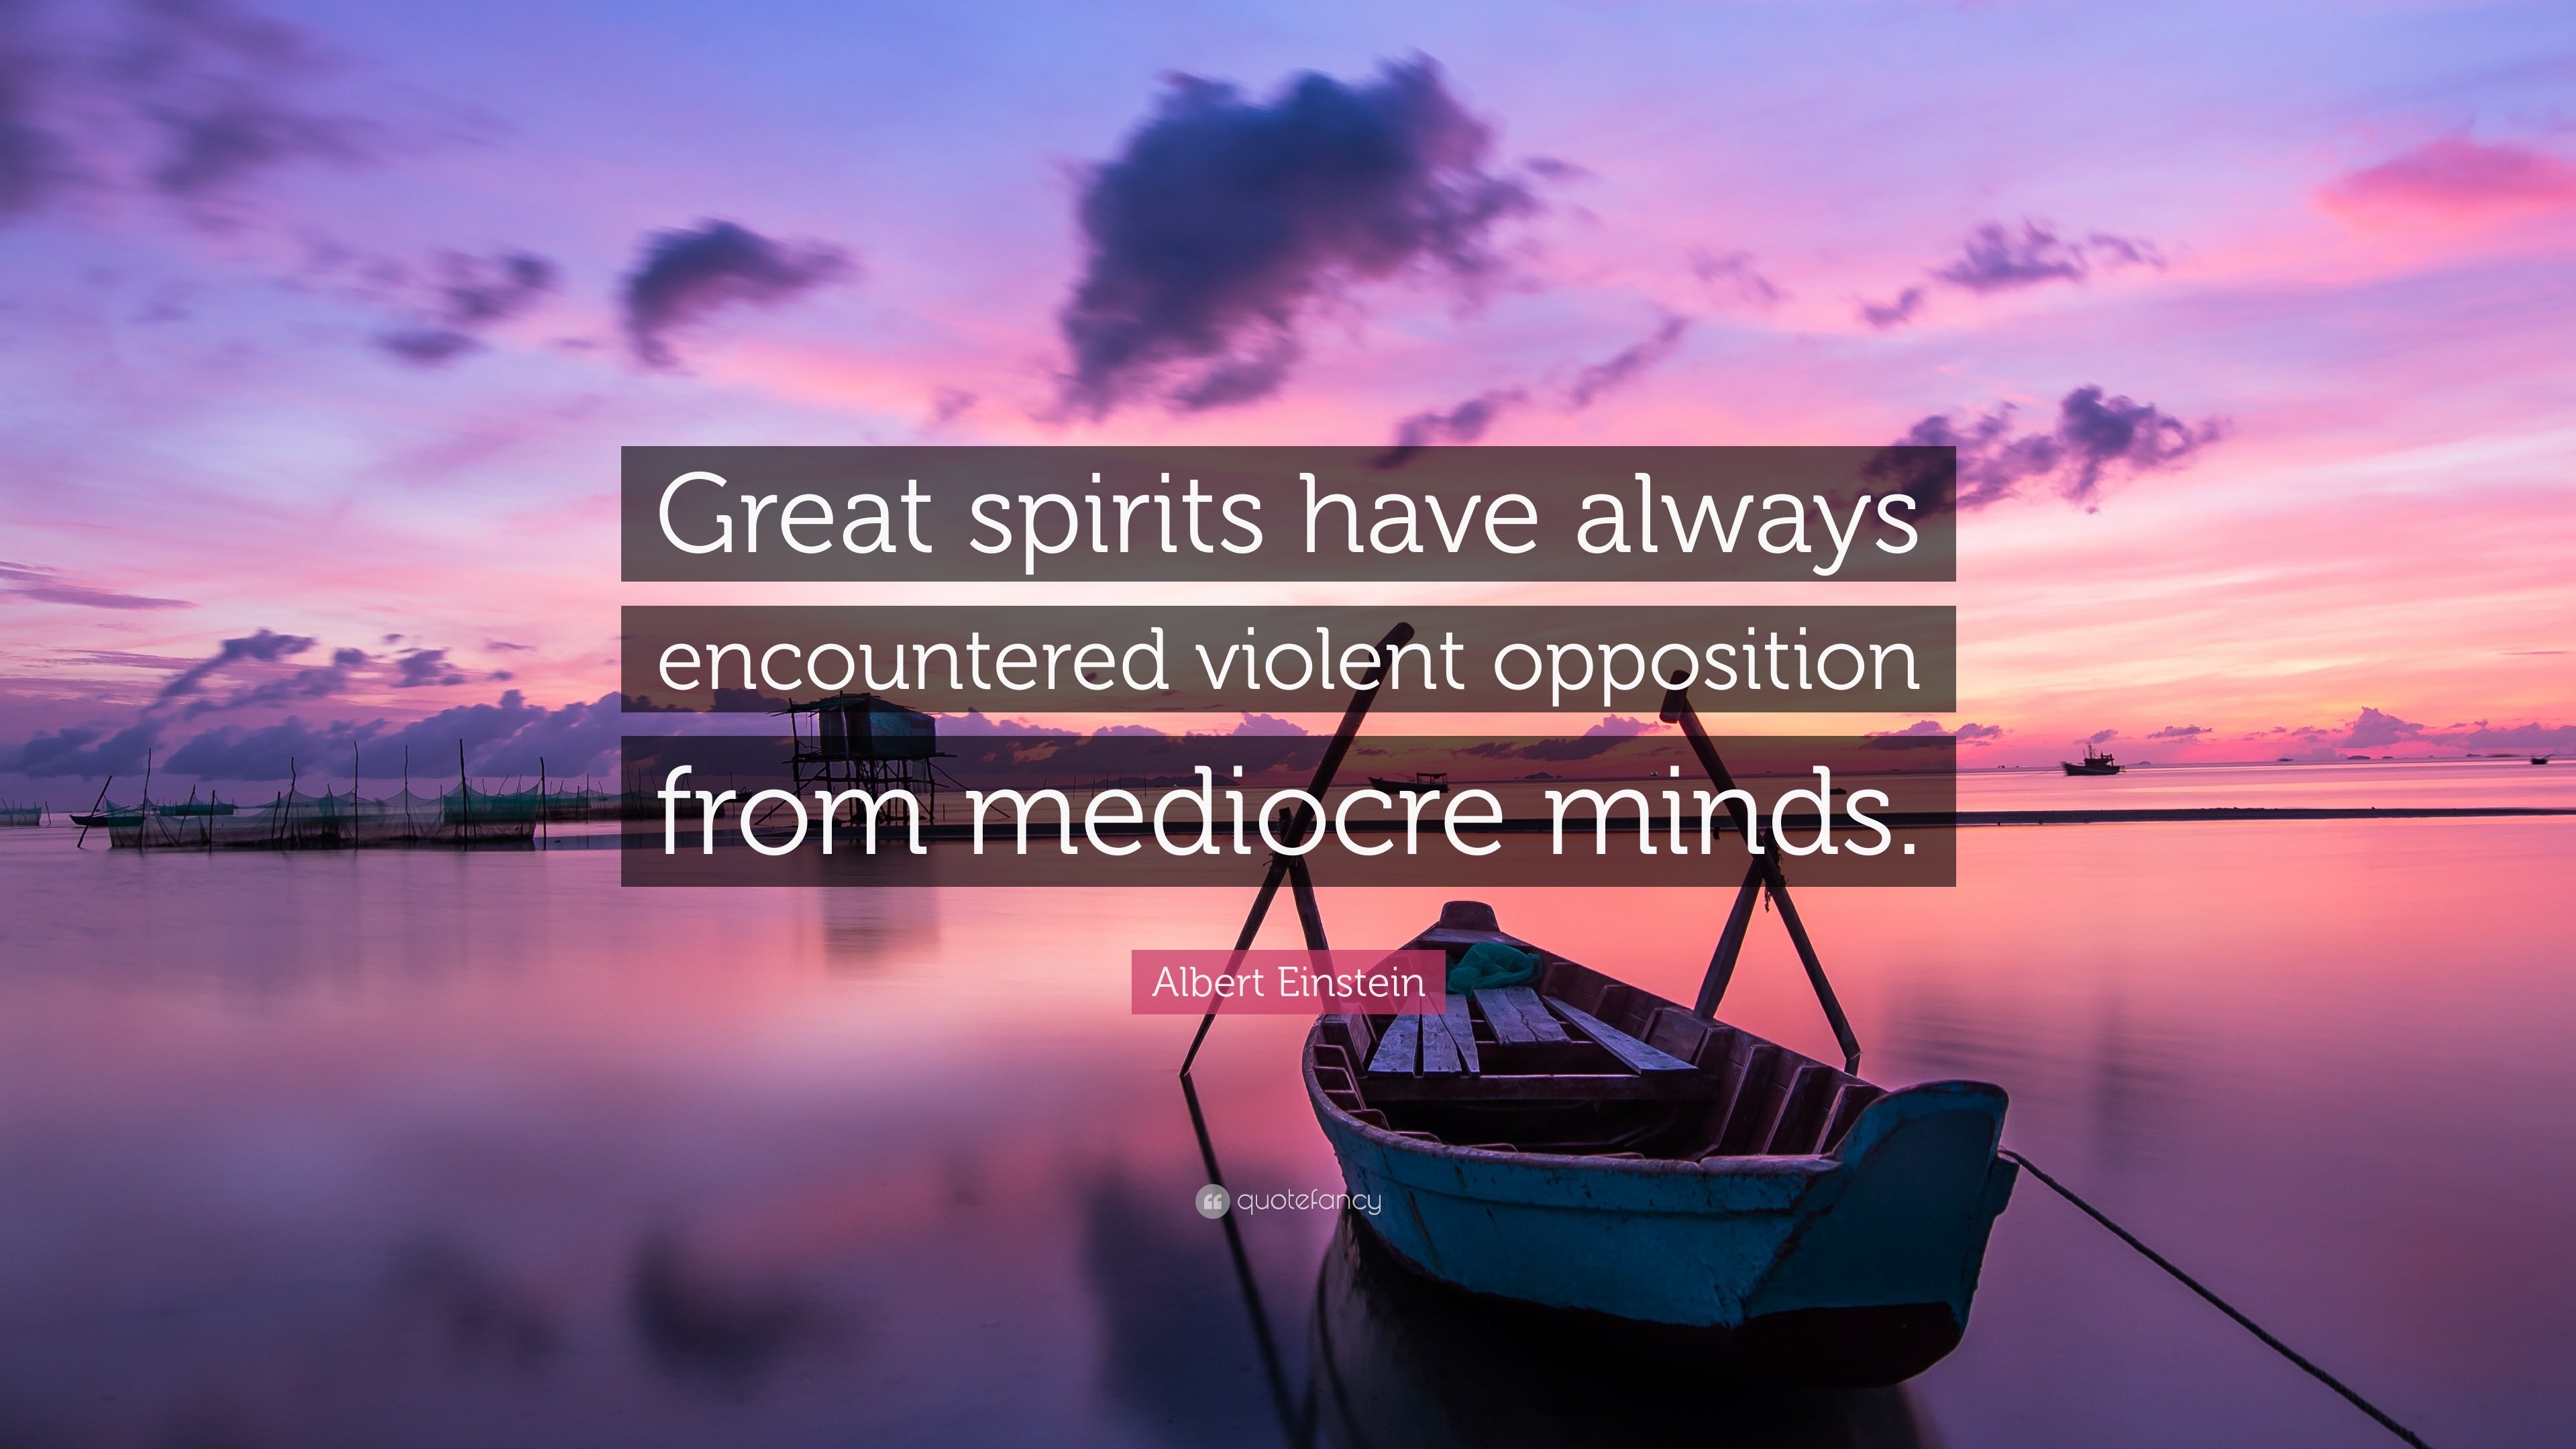 Albert Einstein Quote: “Great spirits have always encountered violent